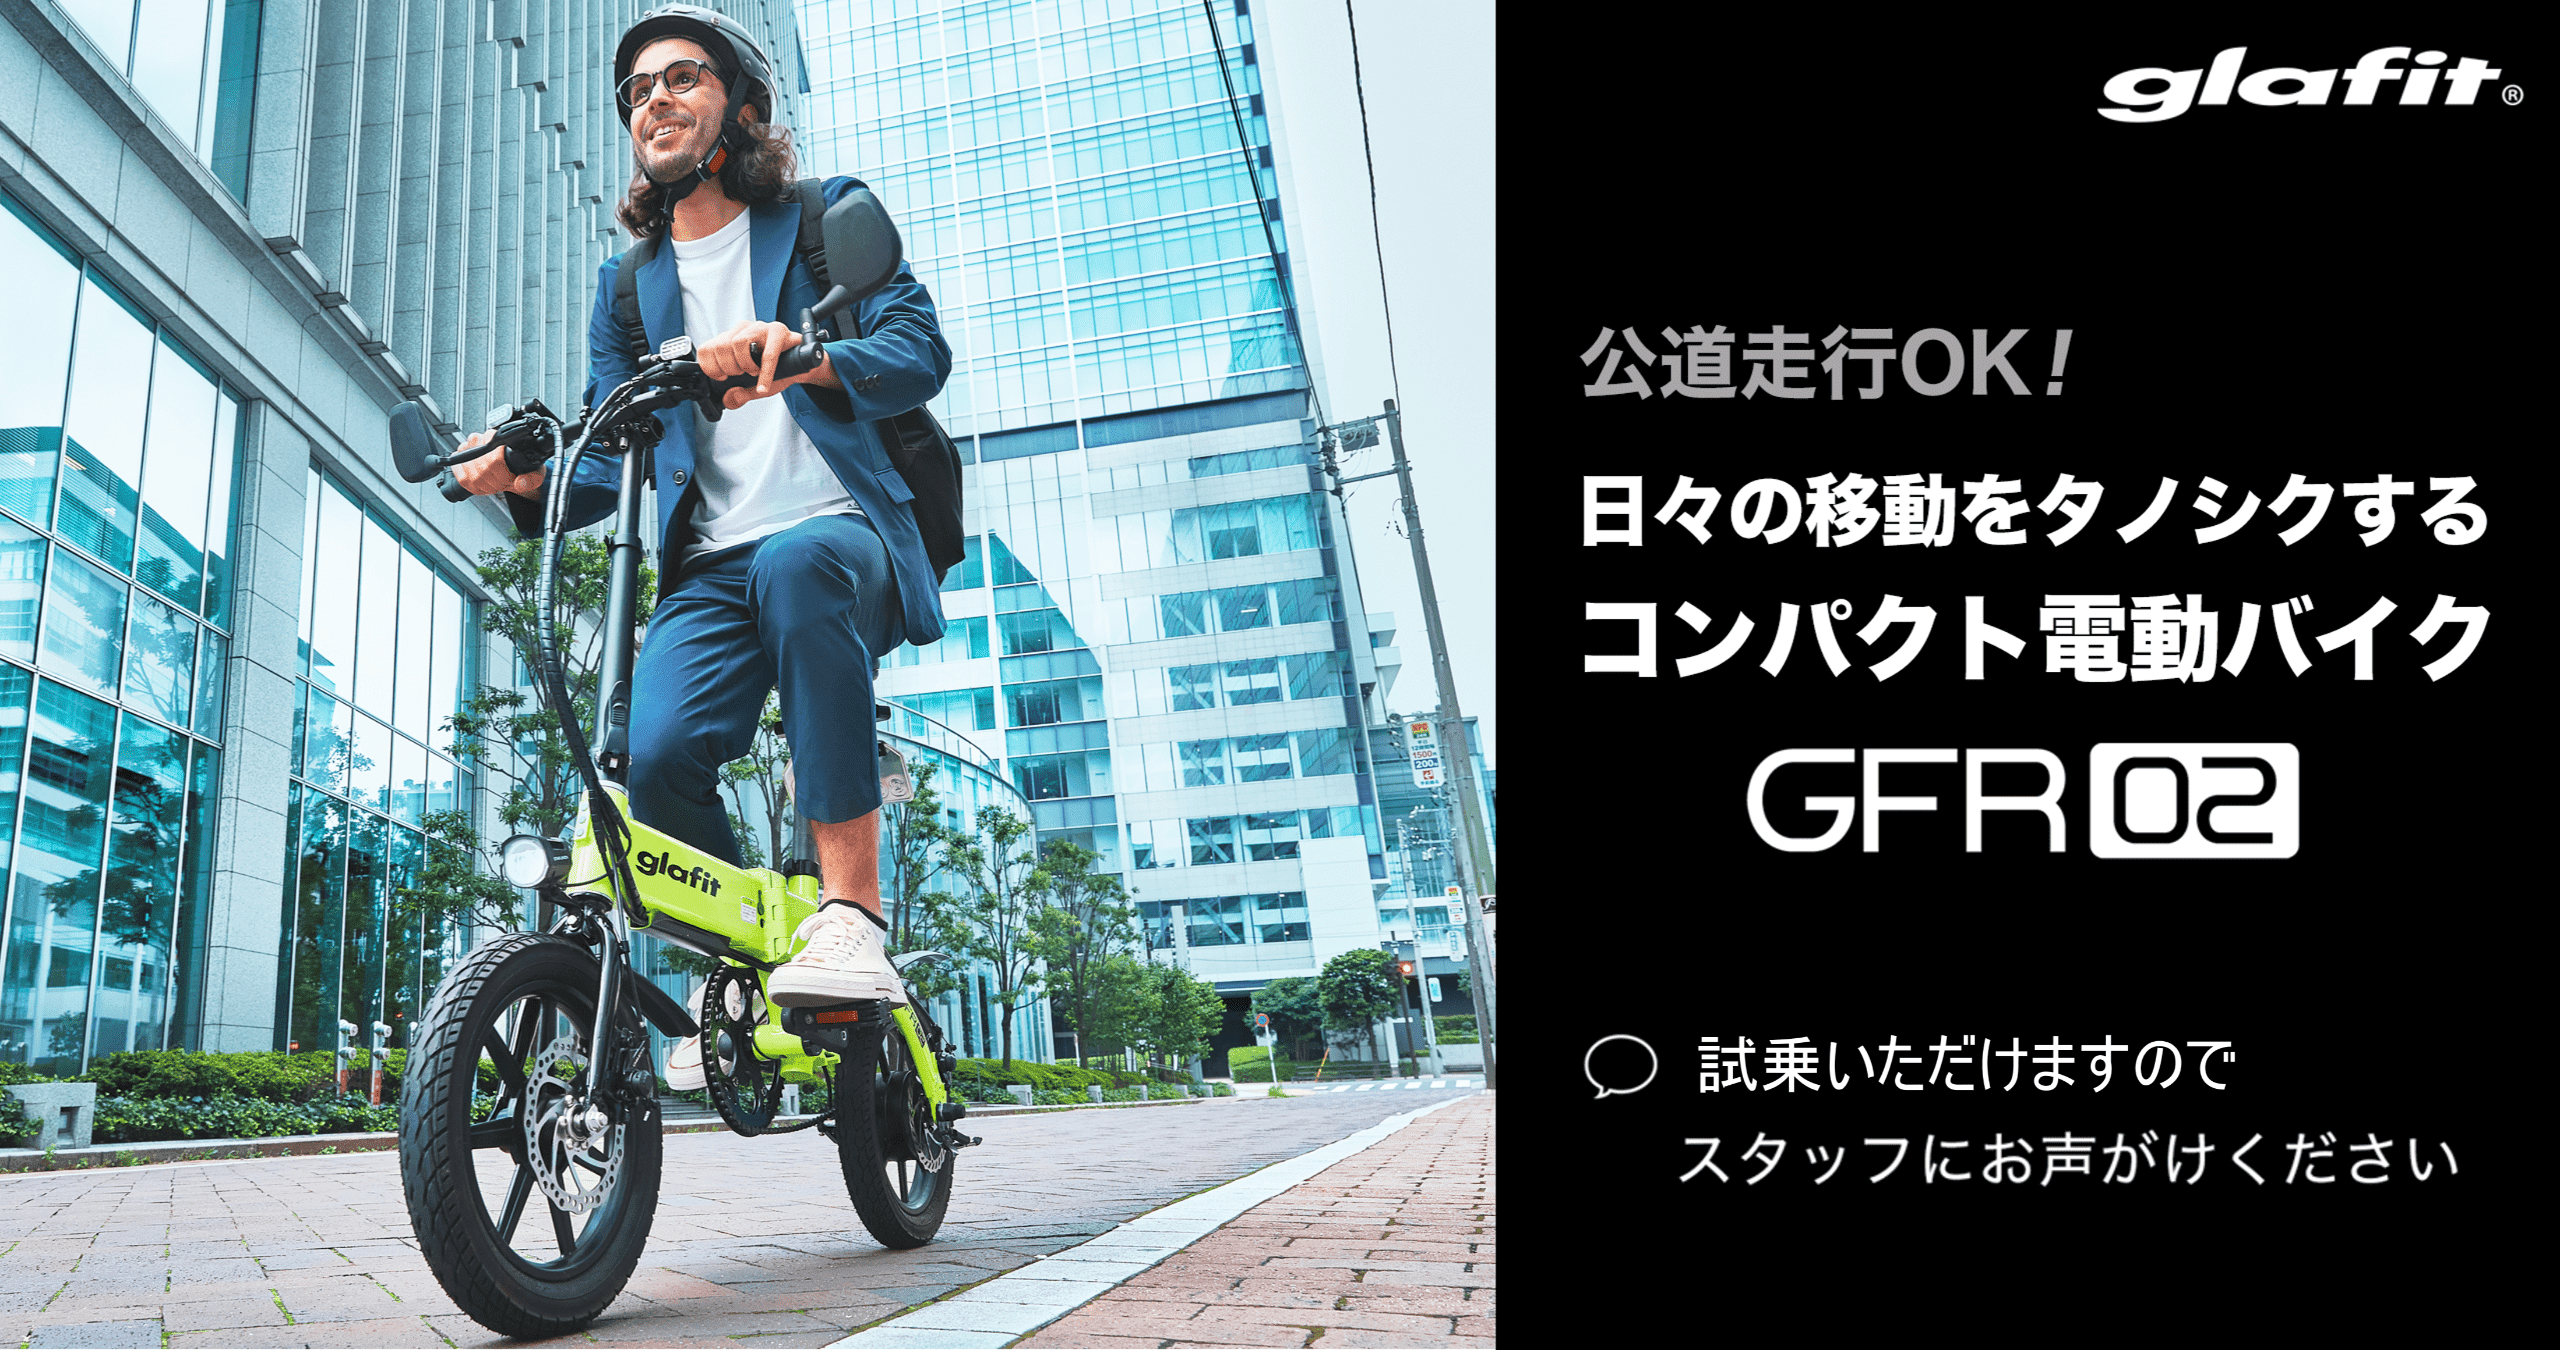 ハイブリッドバイク GFR-02 - b8ta Japan